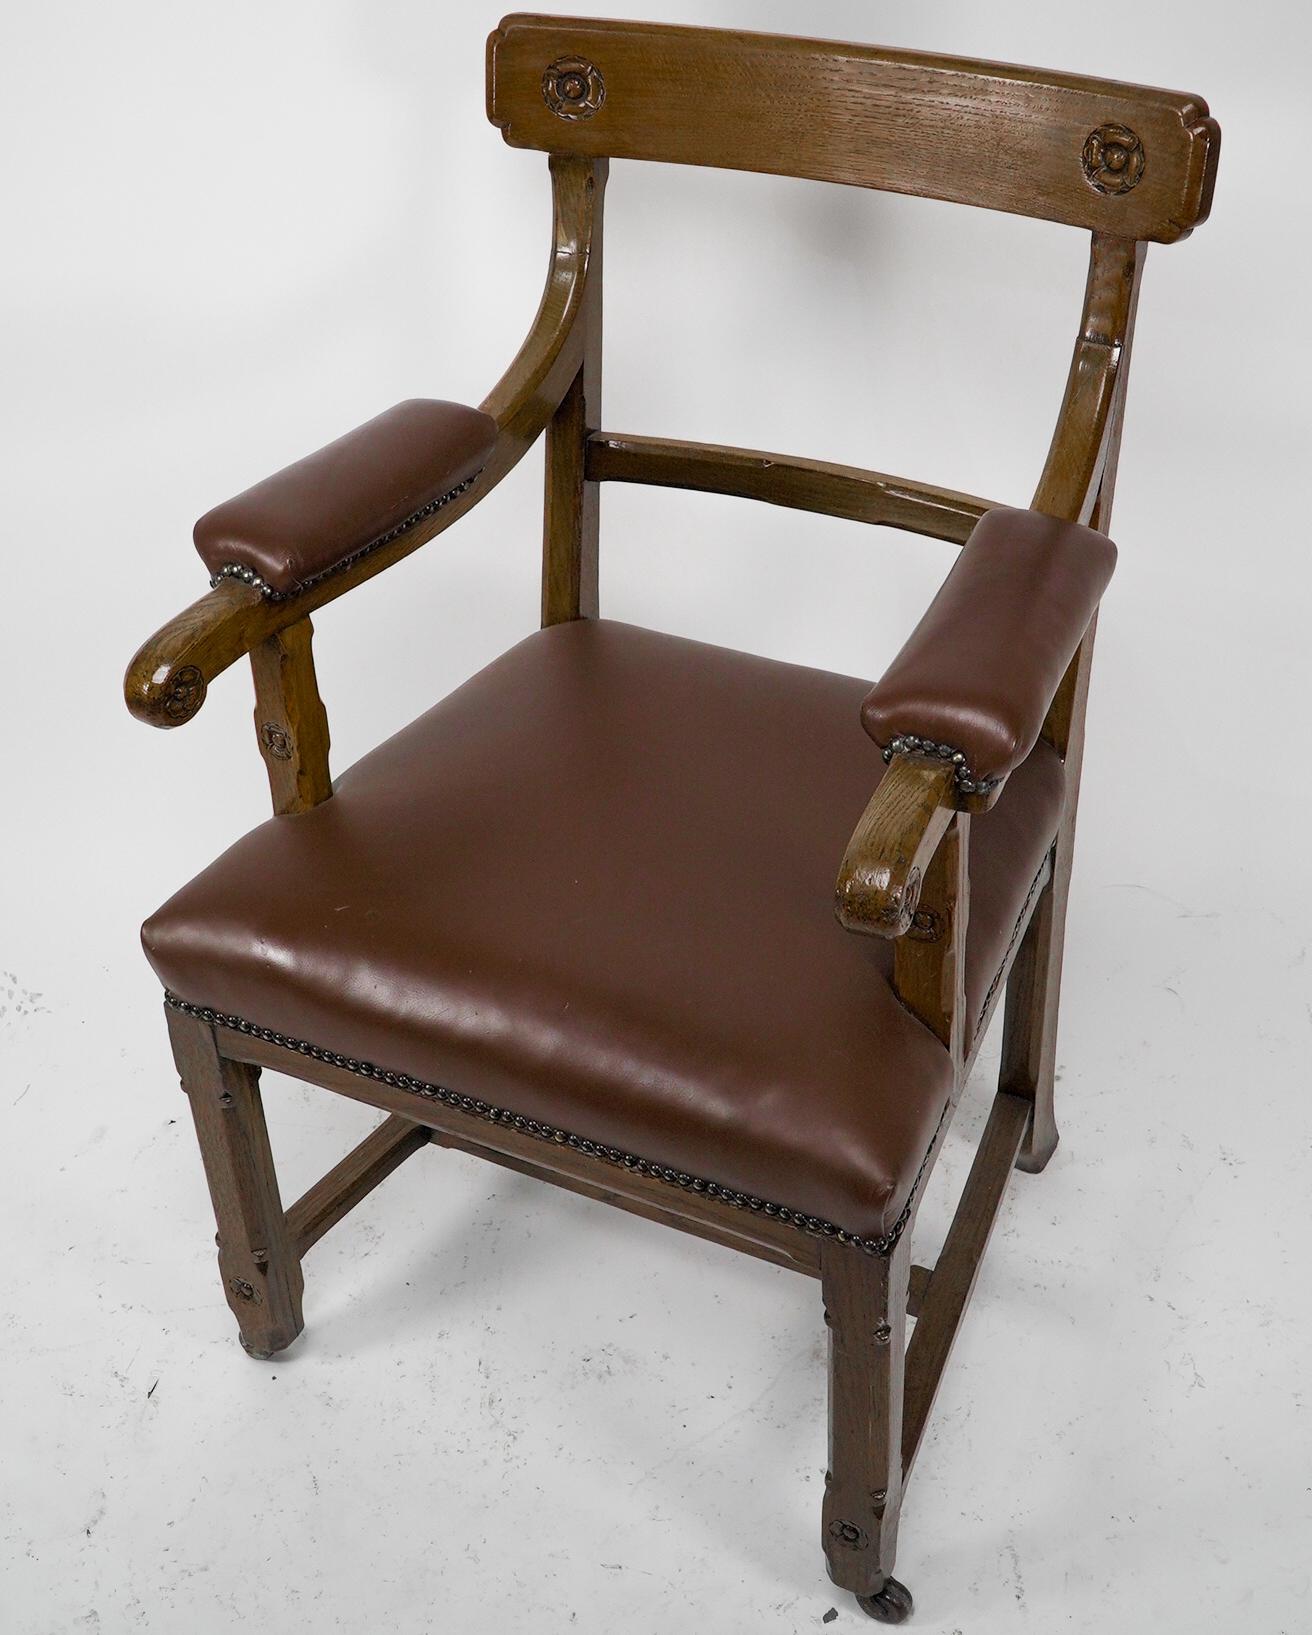 Anglais A W N Pugin, probablement fabriqué par Oak Oak de Lancaster Un fauteuil en chêne de style Revive gothique en vente